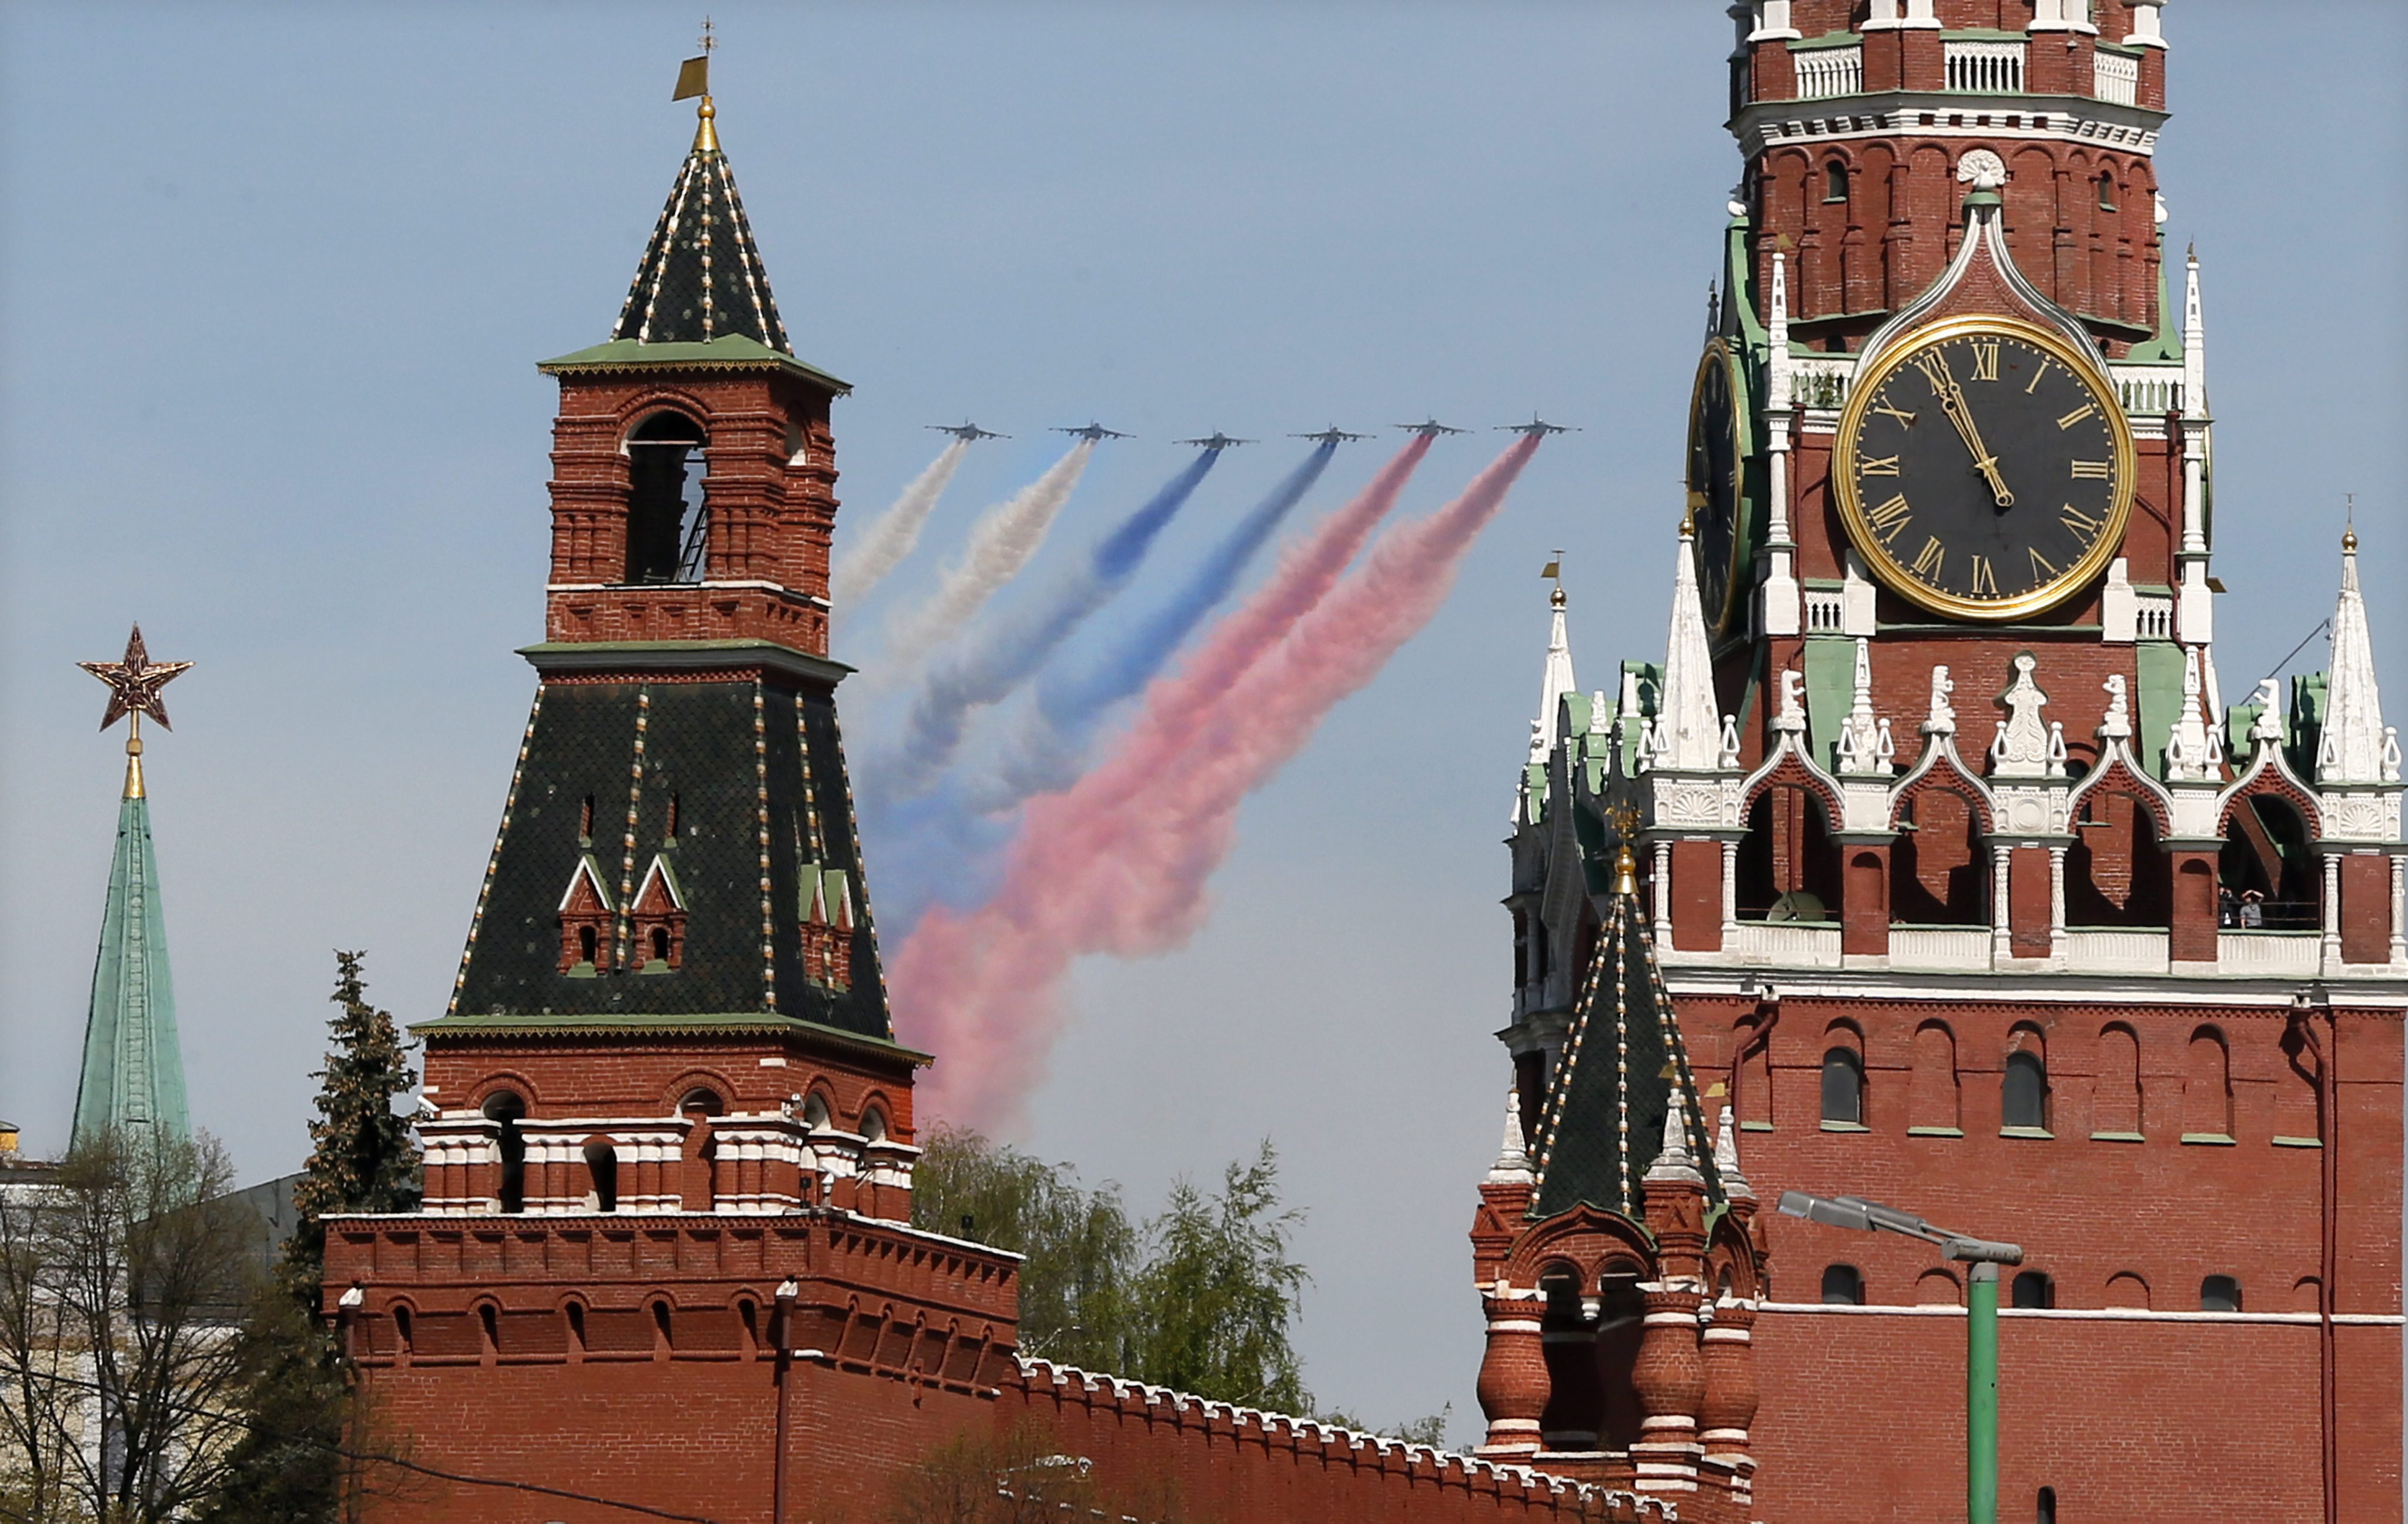 H Ρωσία αλλάζει γνώμη για τη μόνιμη θερινή ώρα